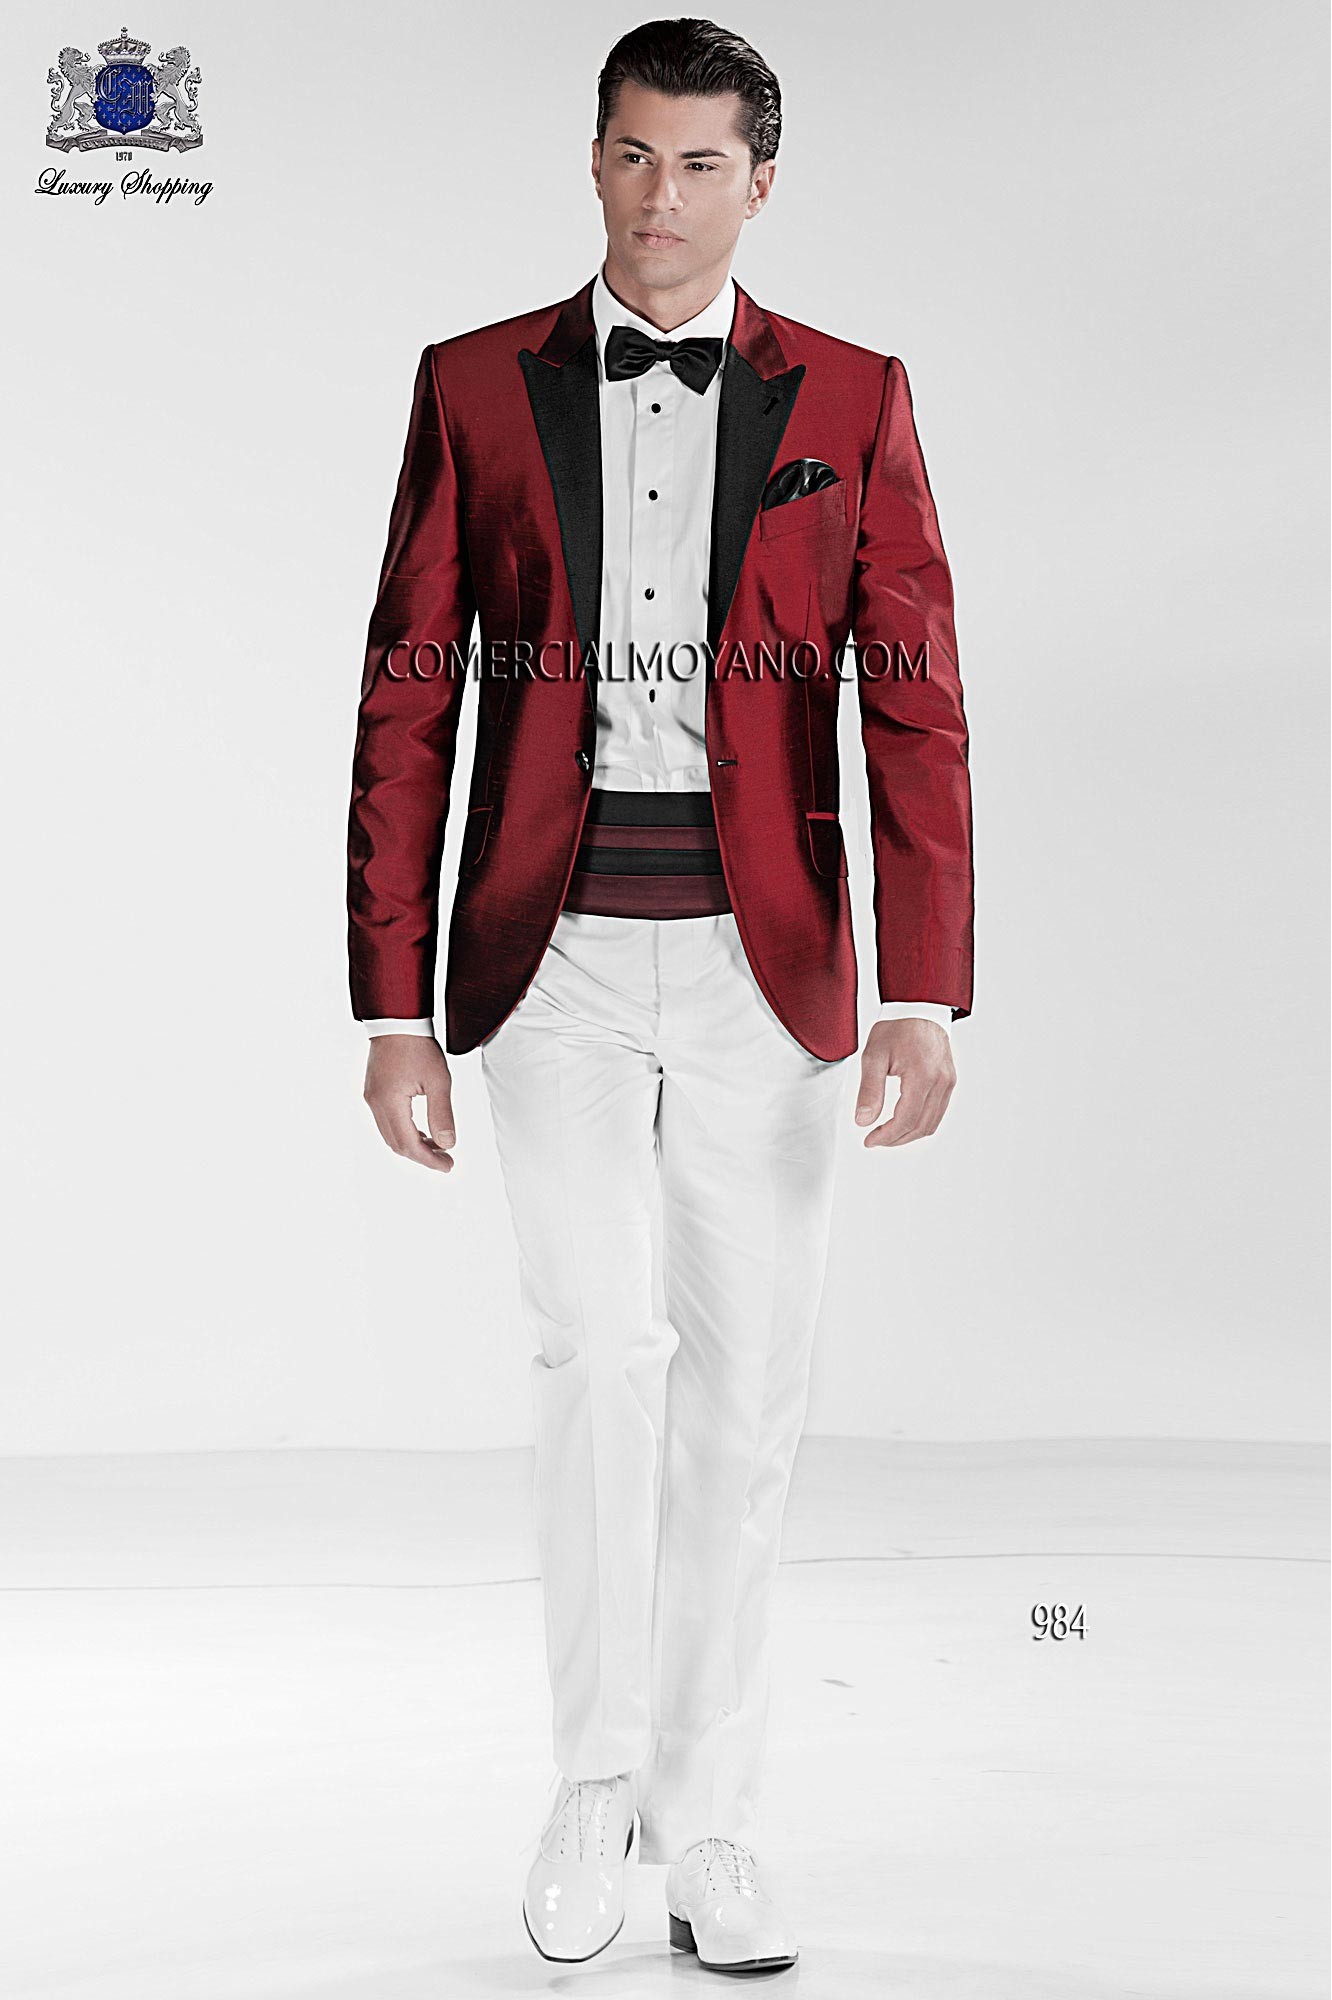 Black Tie red men wedding suit model 984 Mario Moyano